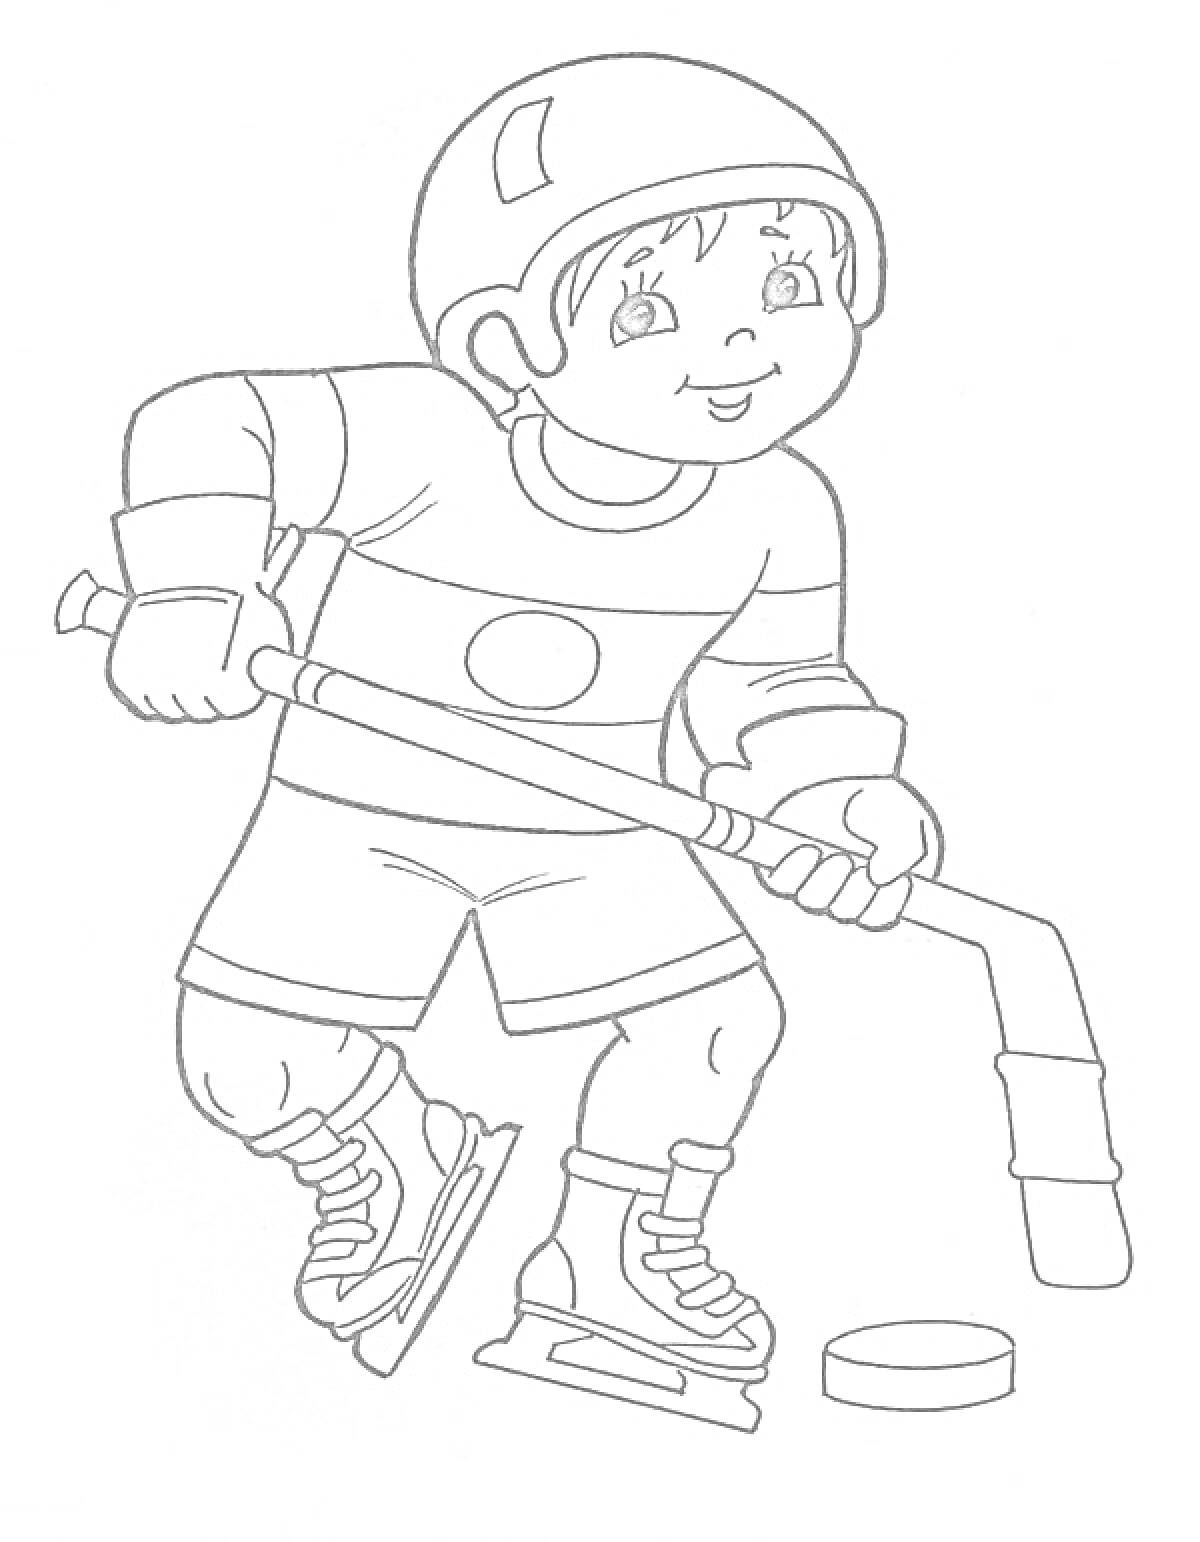 Раскраска Мальчик в хоккейной форме с клюшкой и шайбой